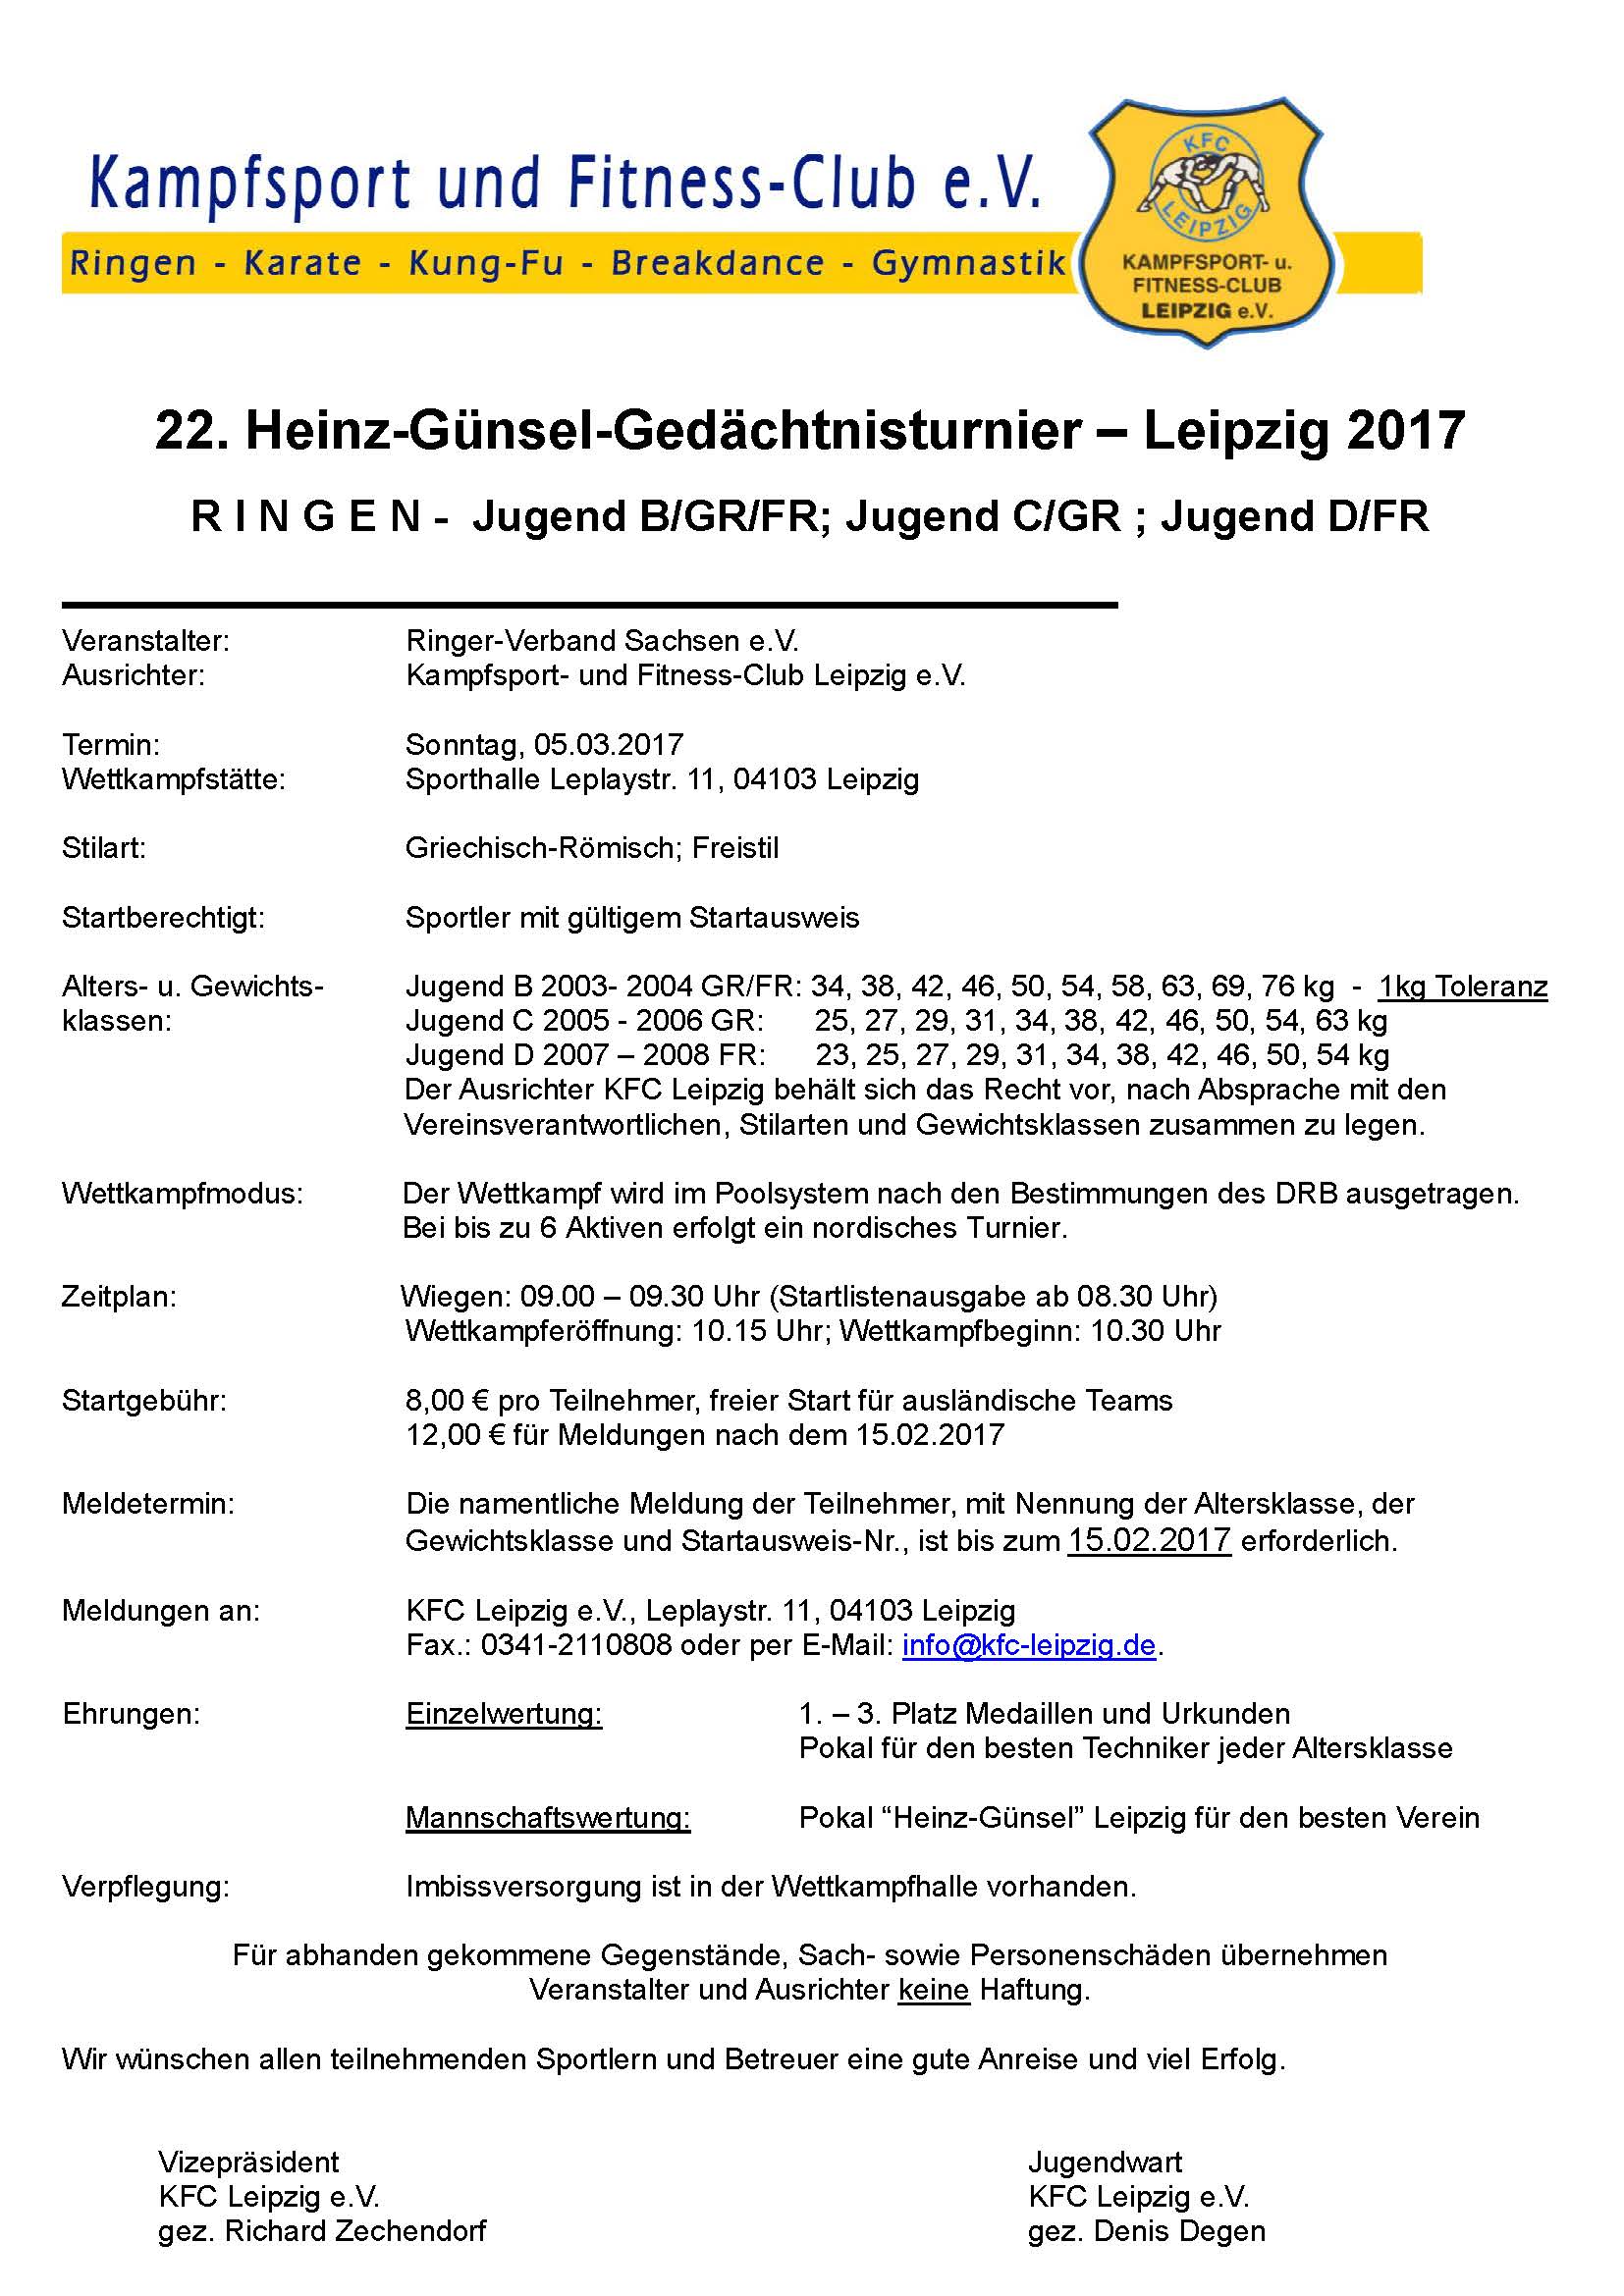 22. Heinz-Günsel-Gedächtnisturnier Leipzig